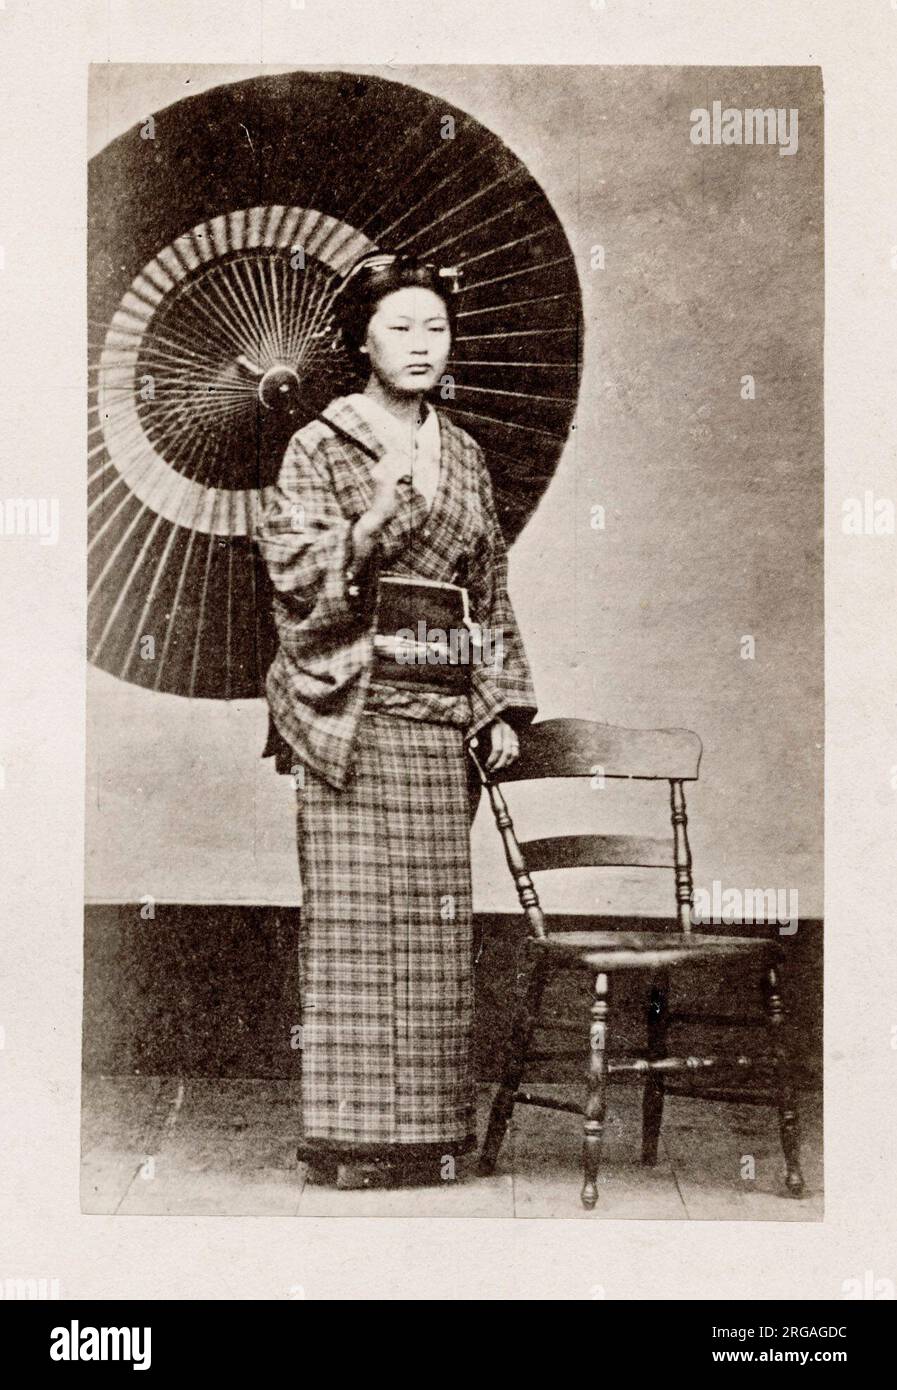 Vintage 19. Jahrhundert Fotografie - frühe fotografische Porträt aus Japan, wahrscheinlich die Arbeit der japanischen Fotografin Shimooka Renjo - Frau mit Sonnenschirm, Regenschirm. Stockfoto